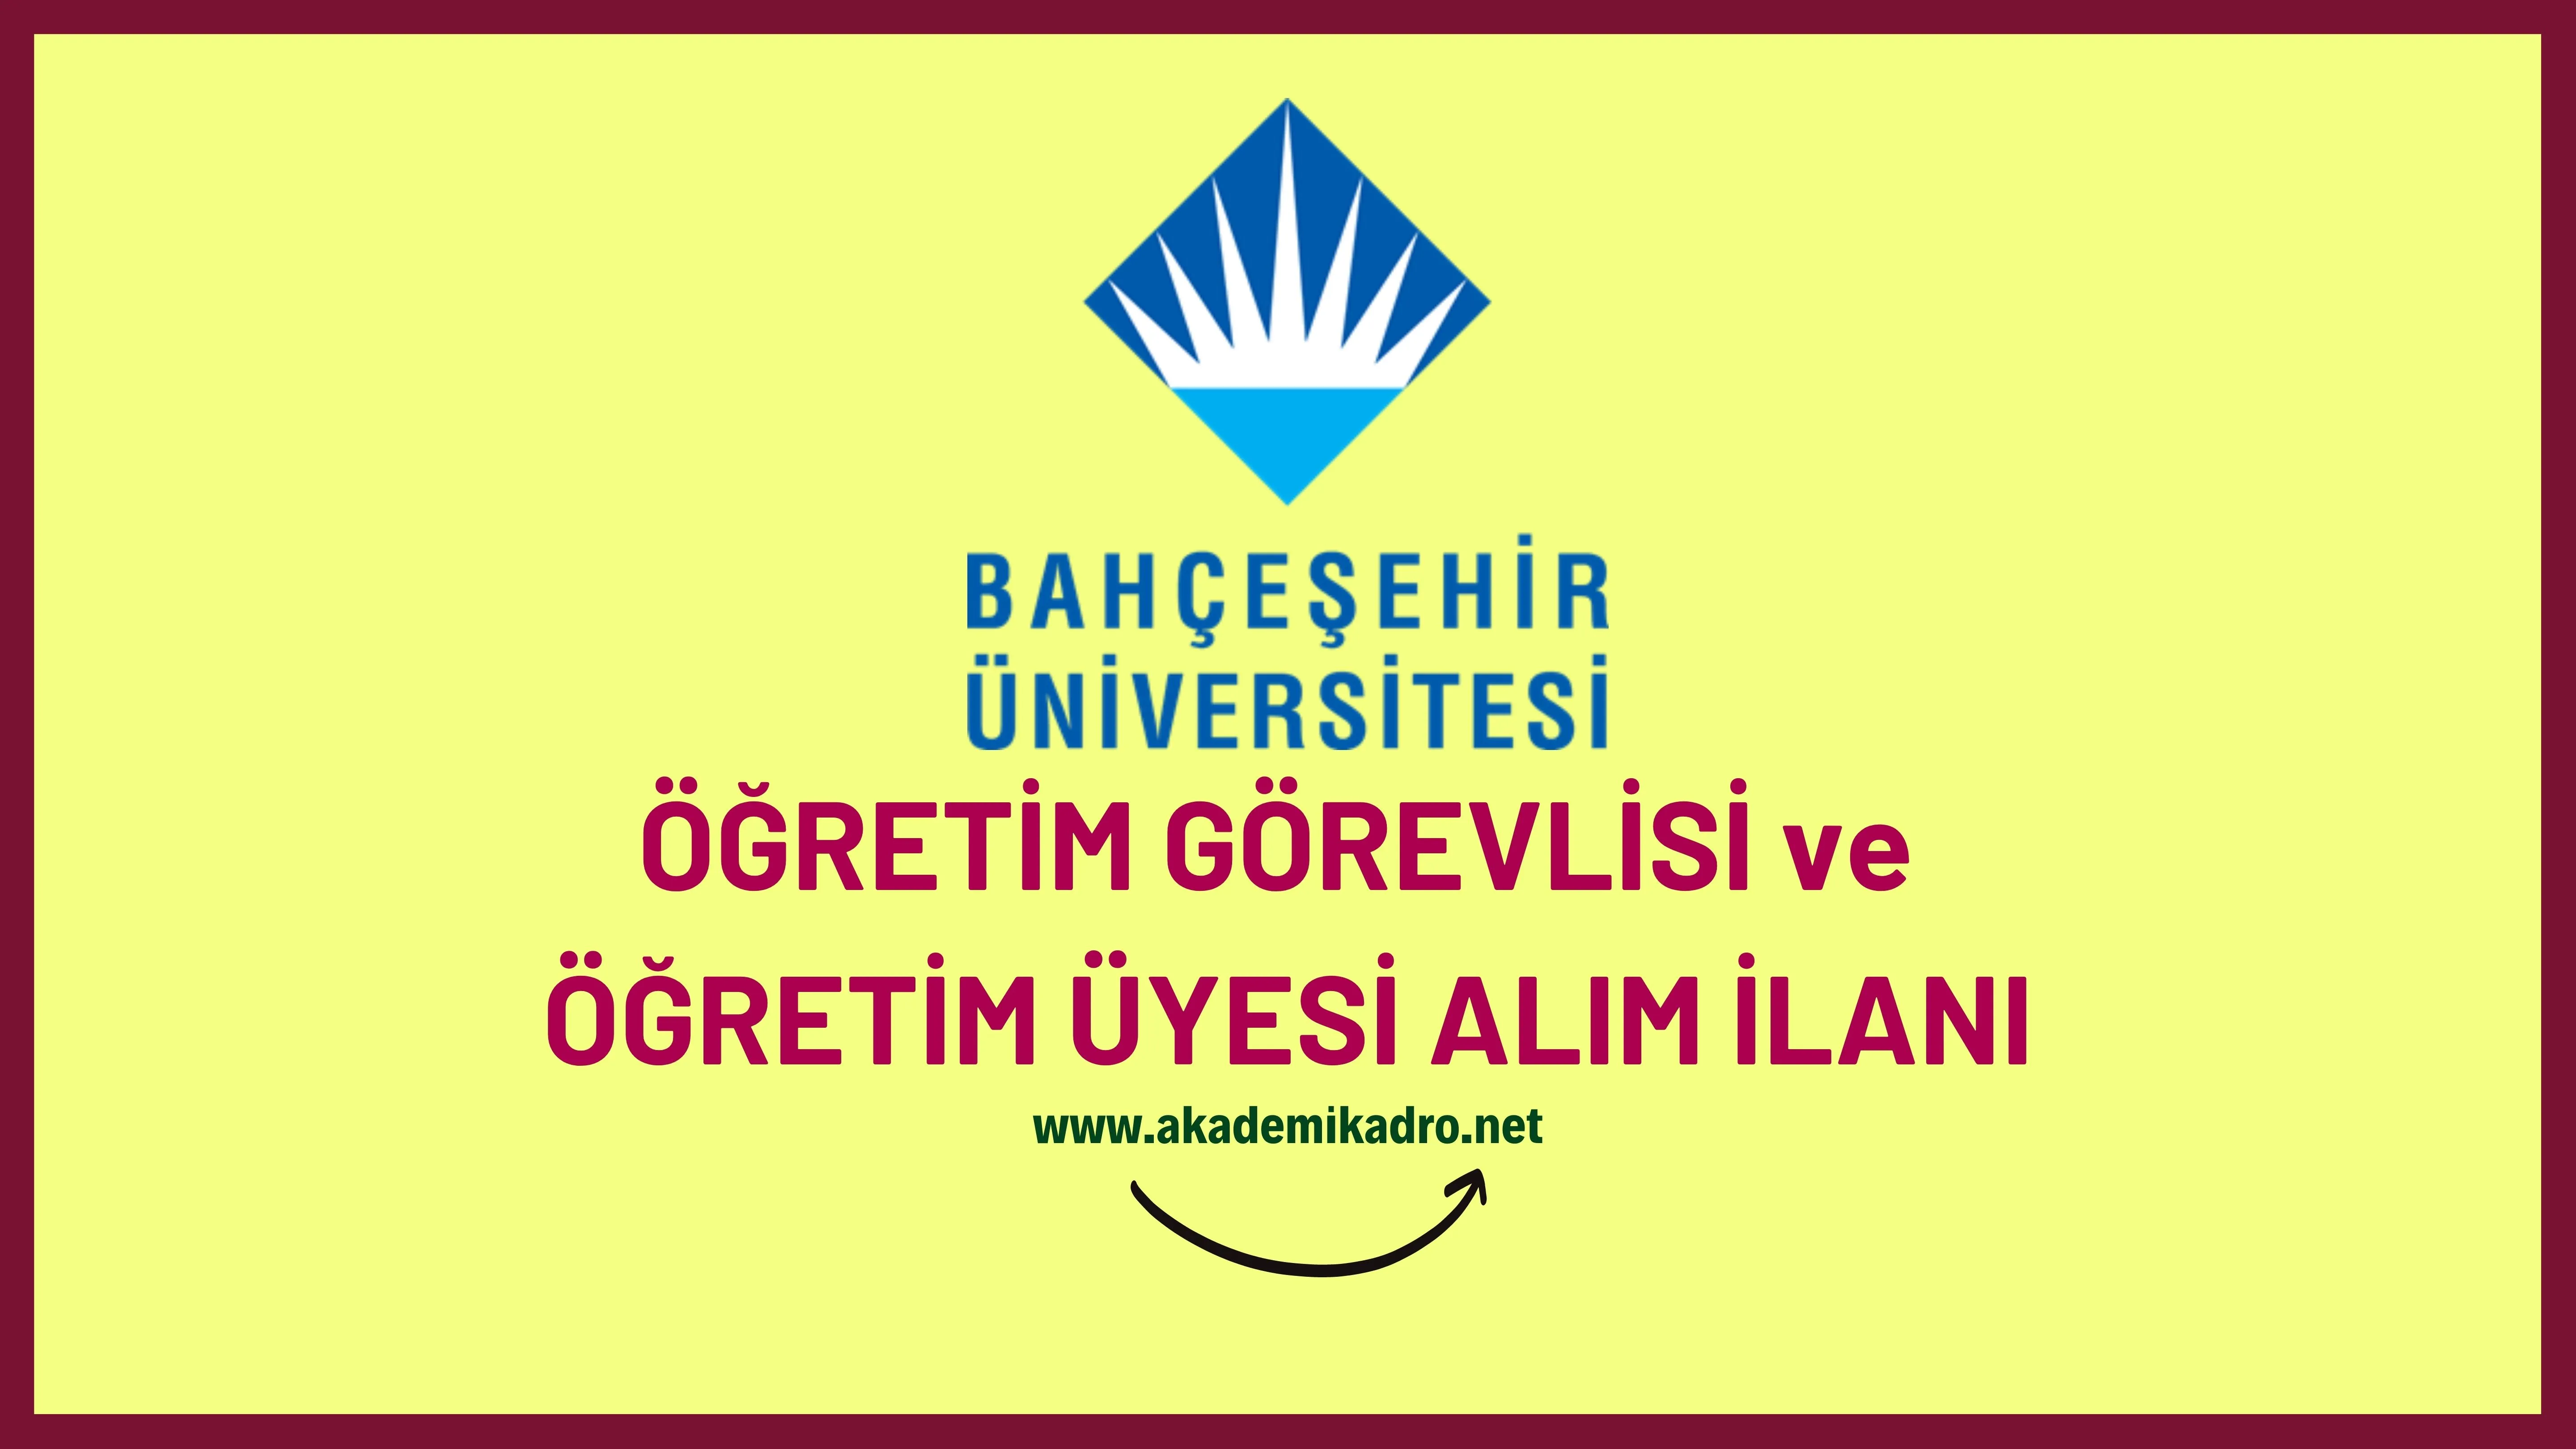 Bahçeşehir Üniversitesi 10 Öğretim görevlisi ve 65 Öğretim üyesi alacak.